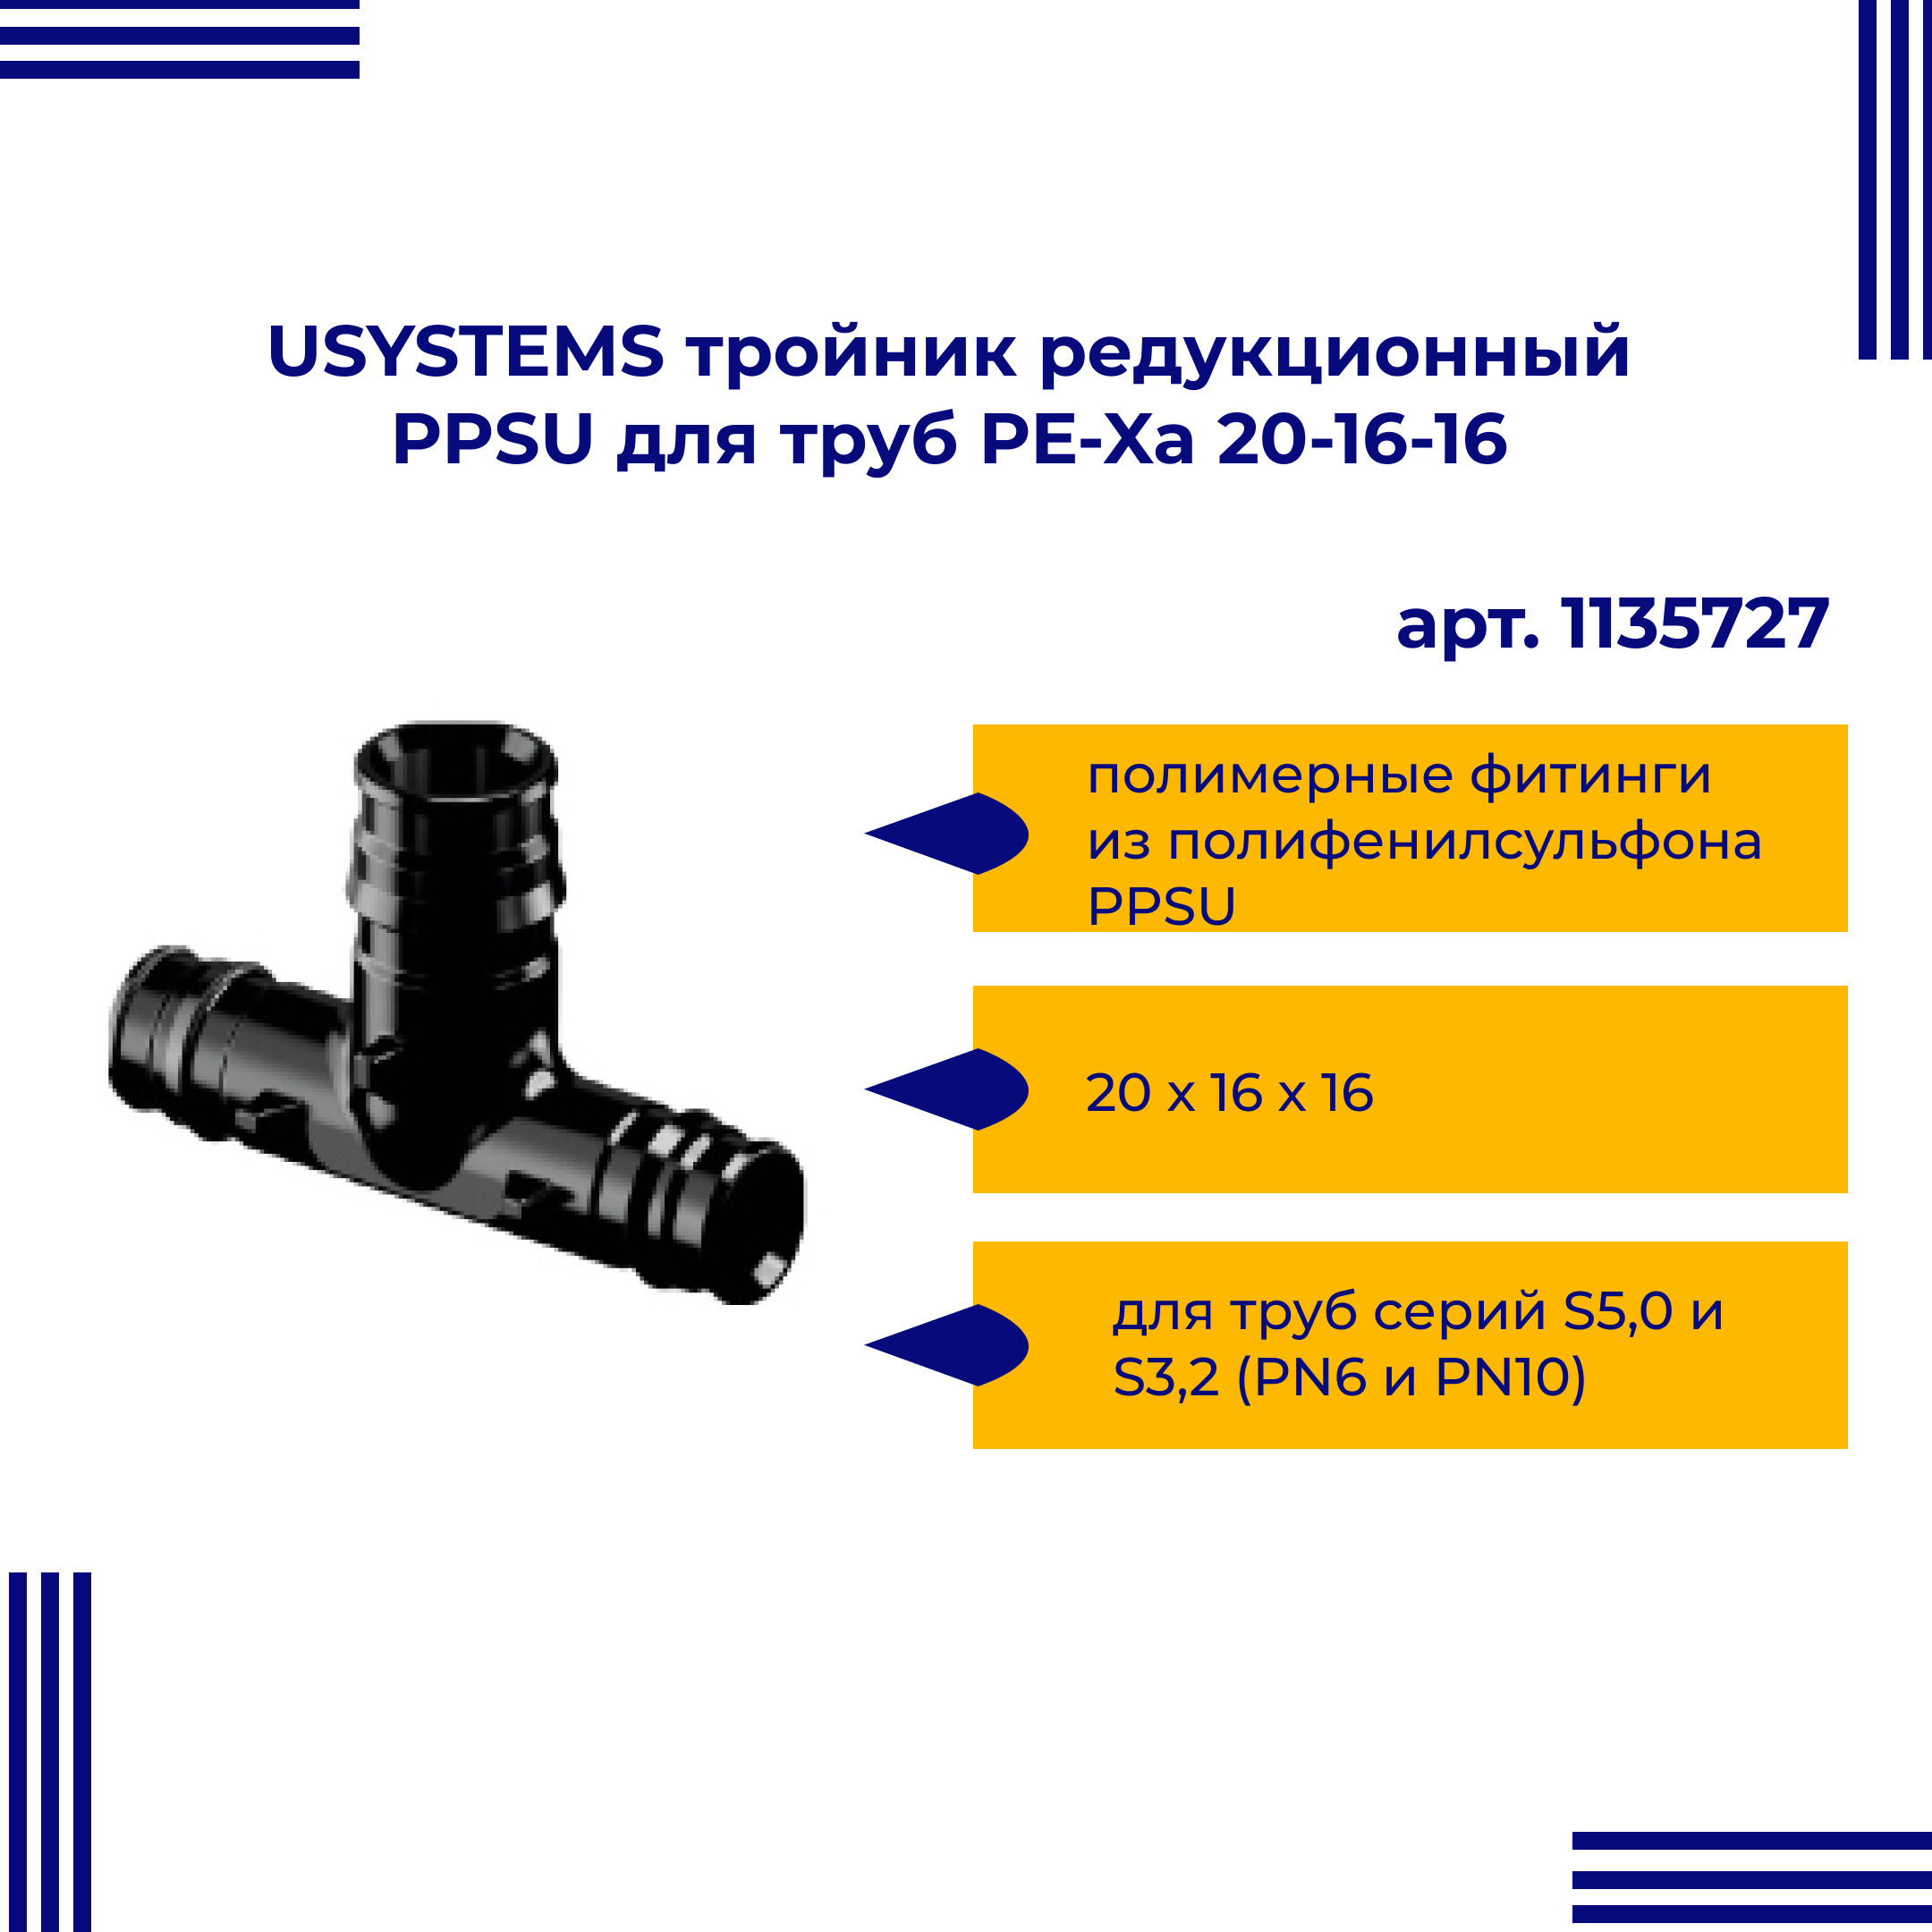 Тройник PPSU USYSTEMS редукционный для труб PE-Xa 20-16-16 1135727 двойная водорозетка для труб из сшитого полиэтилена pex qe one plus